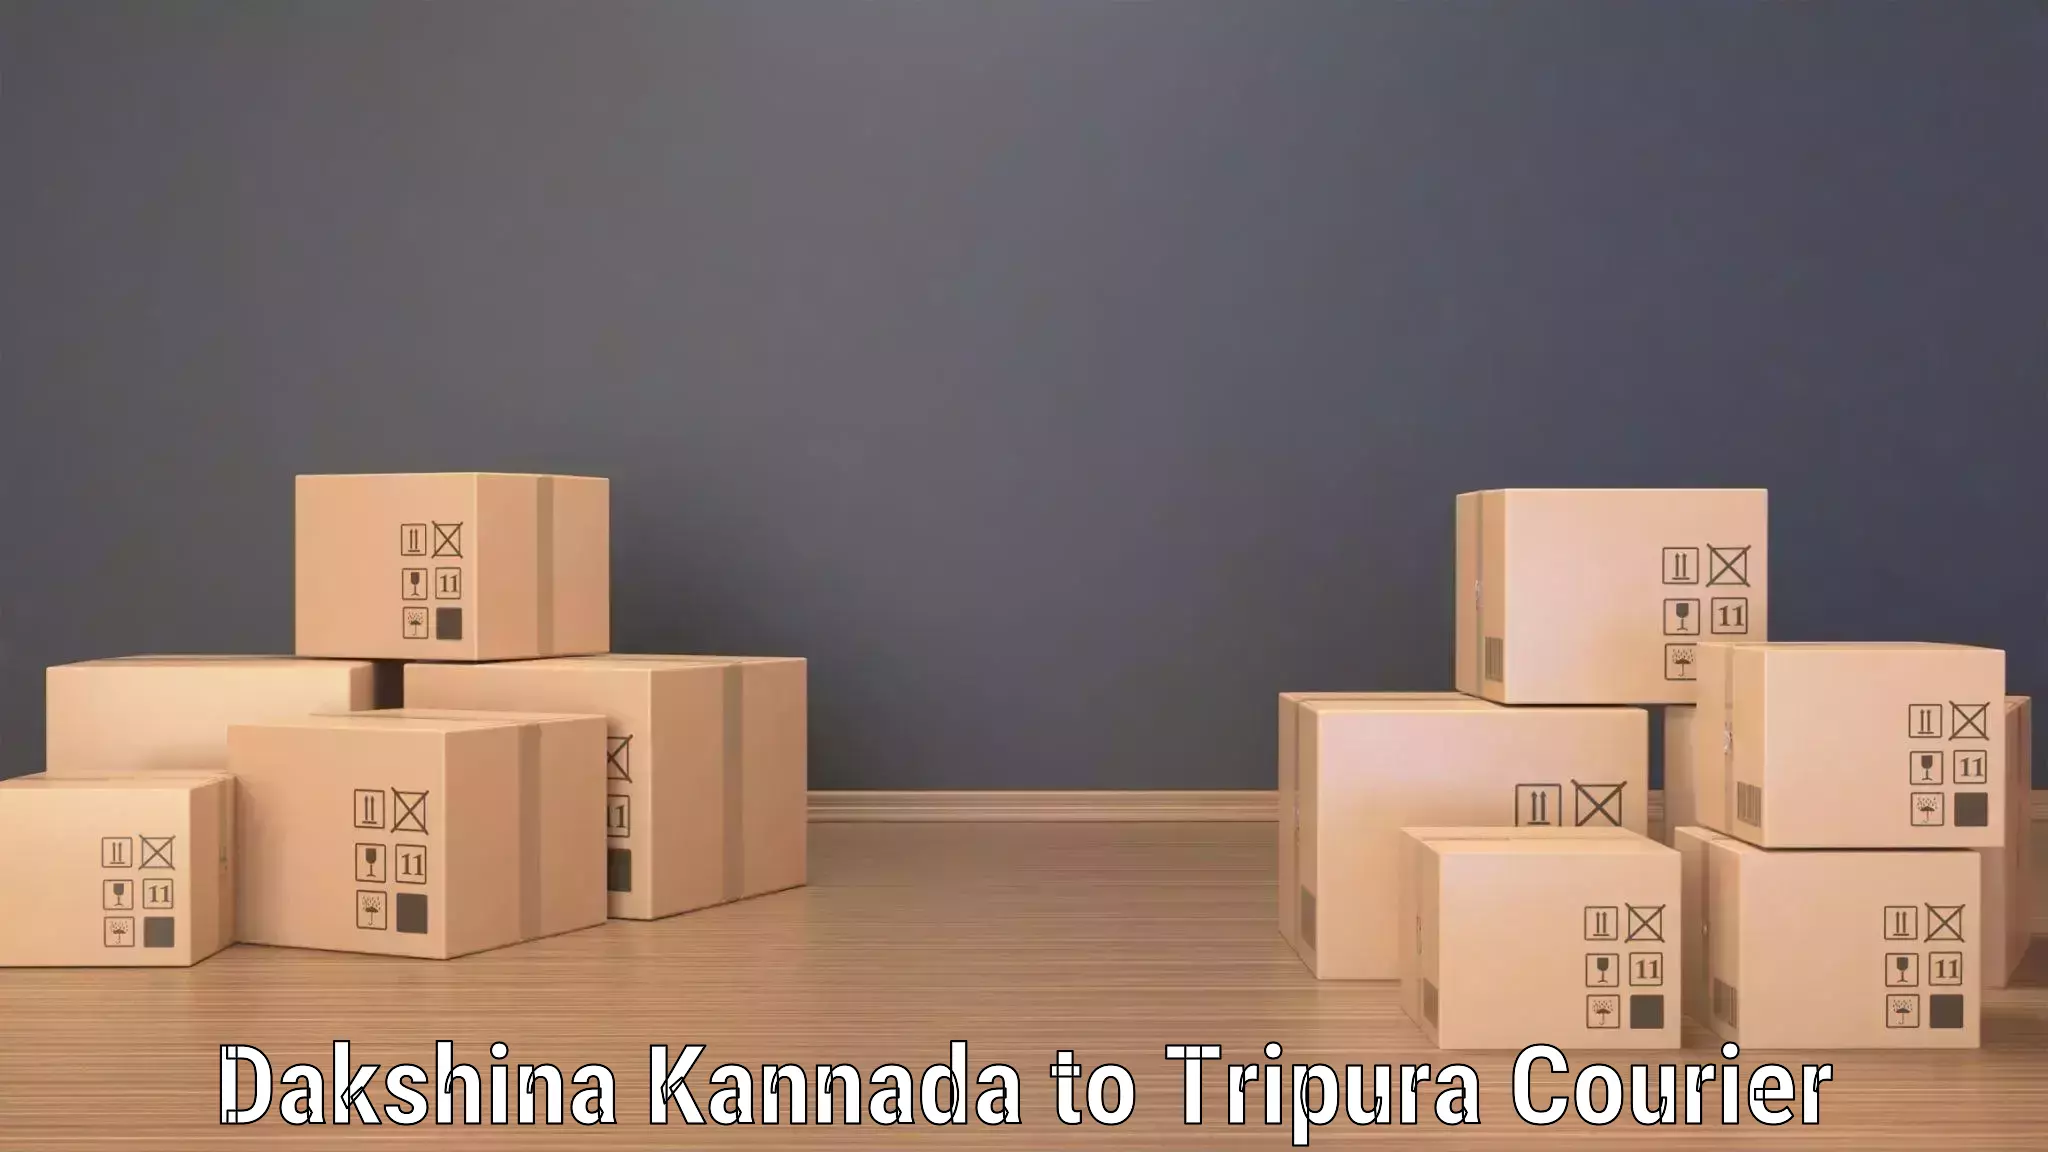 High-capacity shipping options Dakshina Kannada to IIIT Agartala